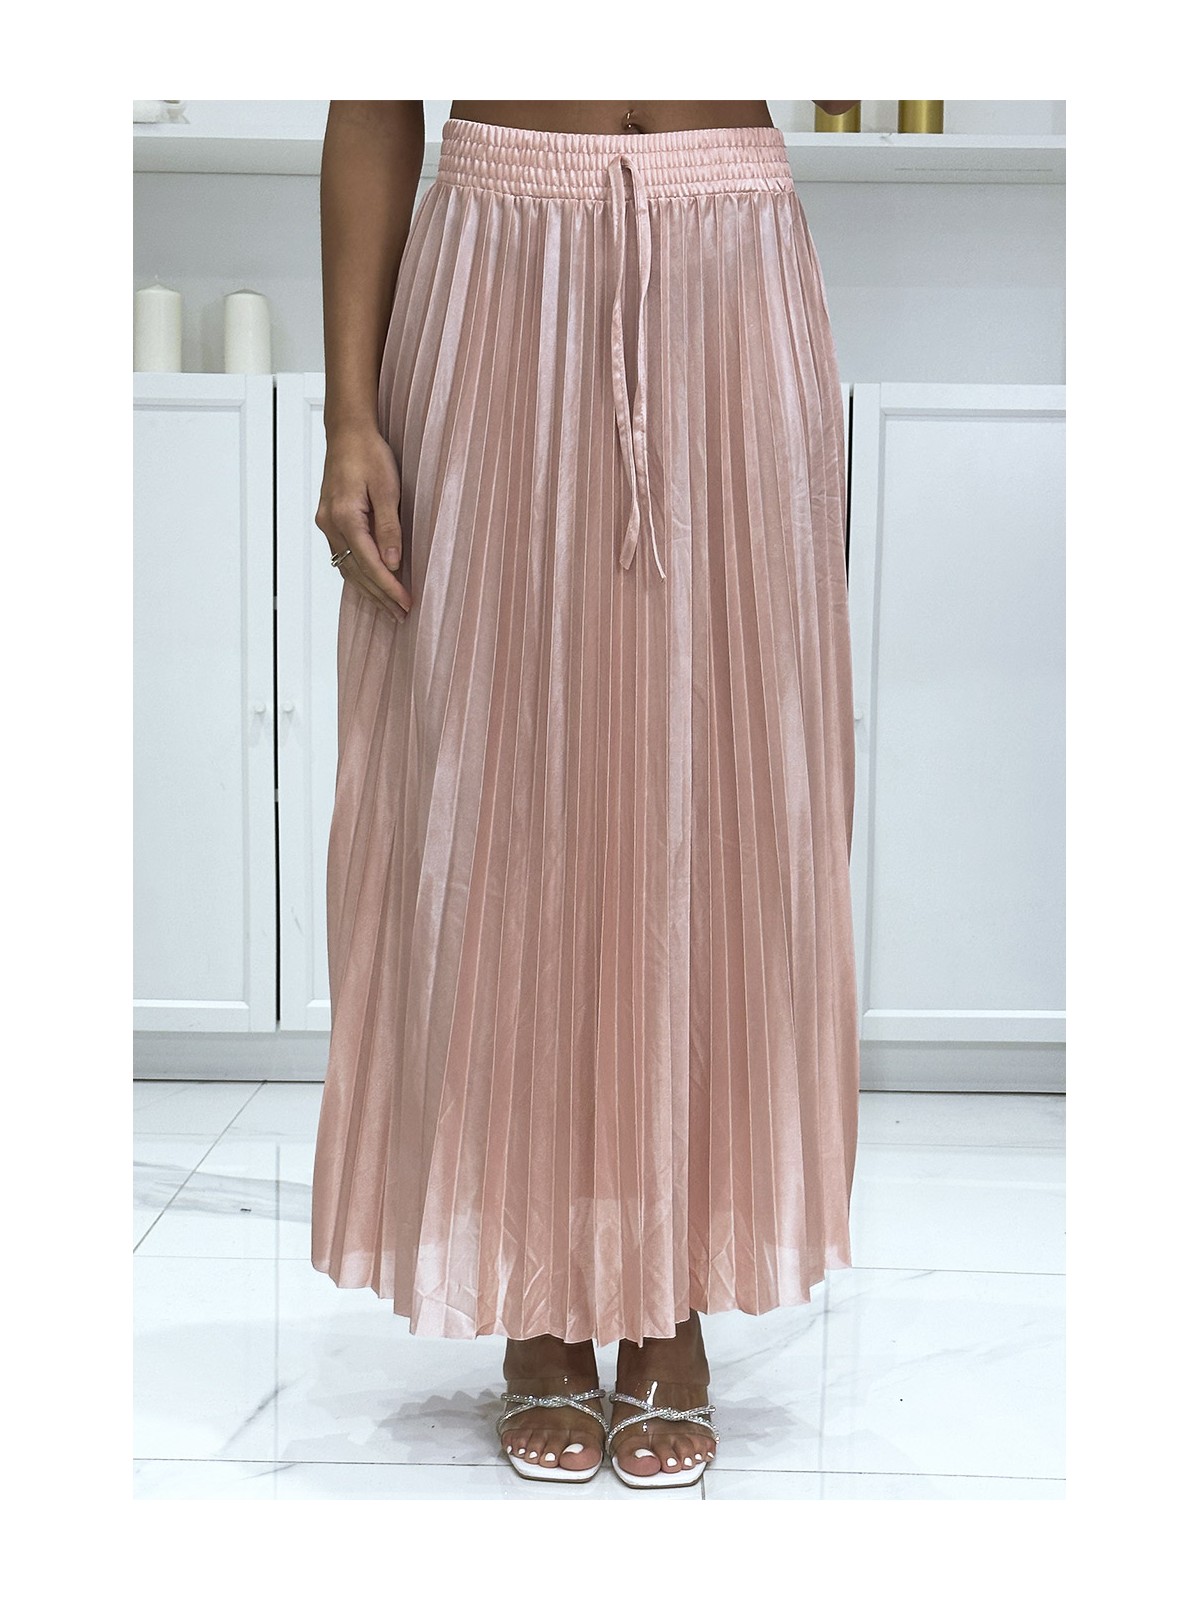 Longue jupe plissé satiné rose très chic - 3